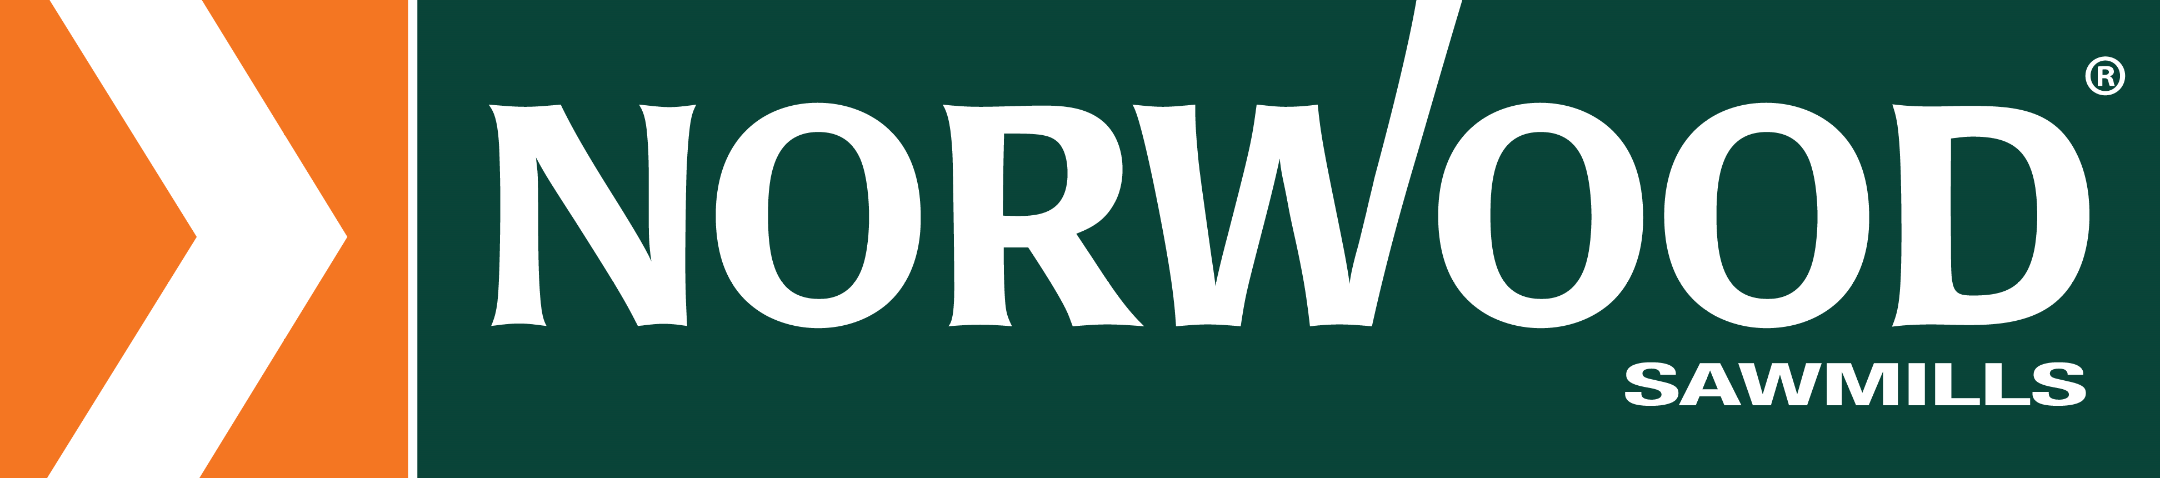 Norwood Sawmills Logo